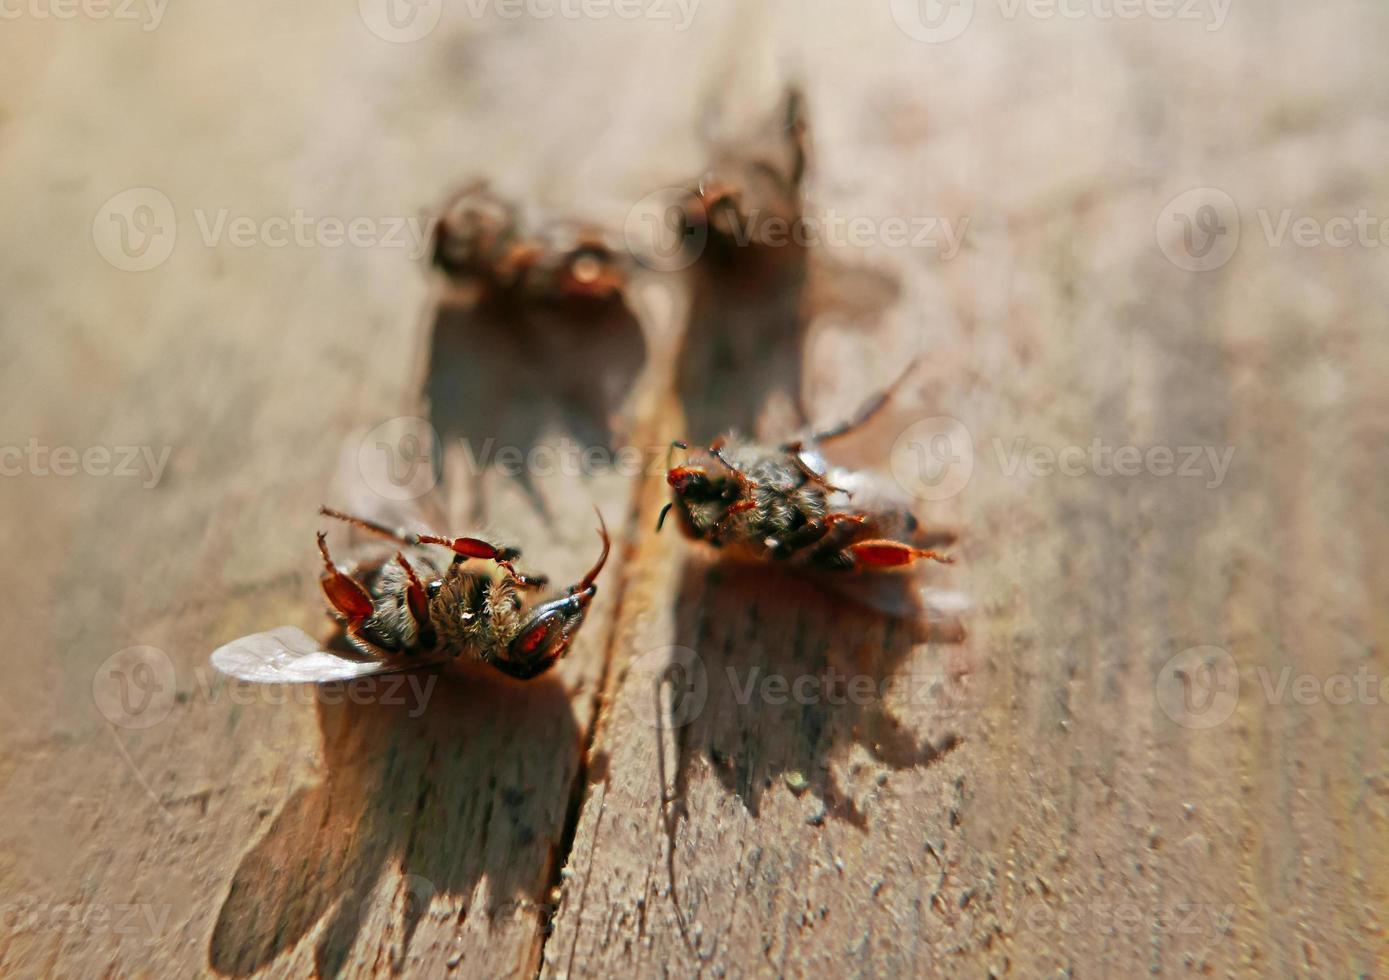 abelhas mortas na madeira foto